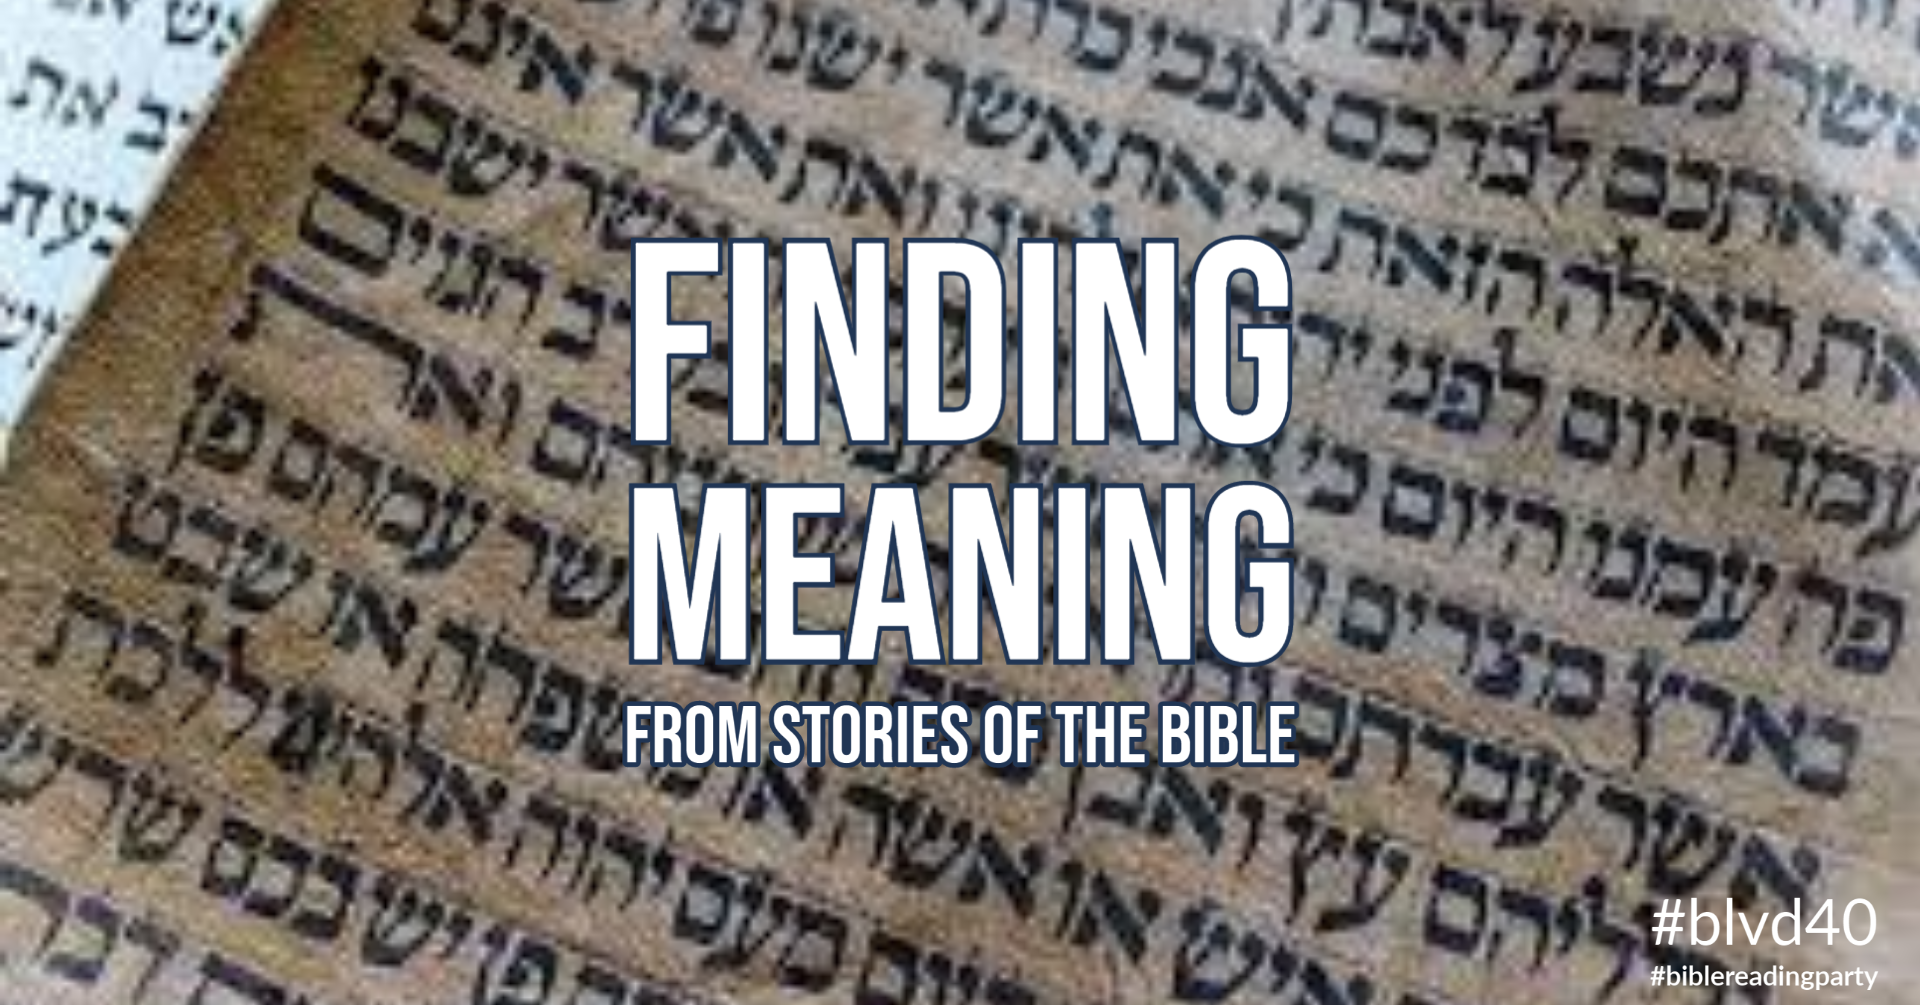 Understanding Bible Stories